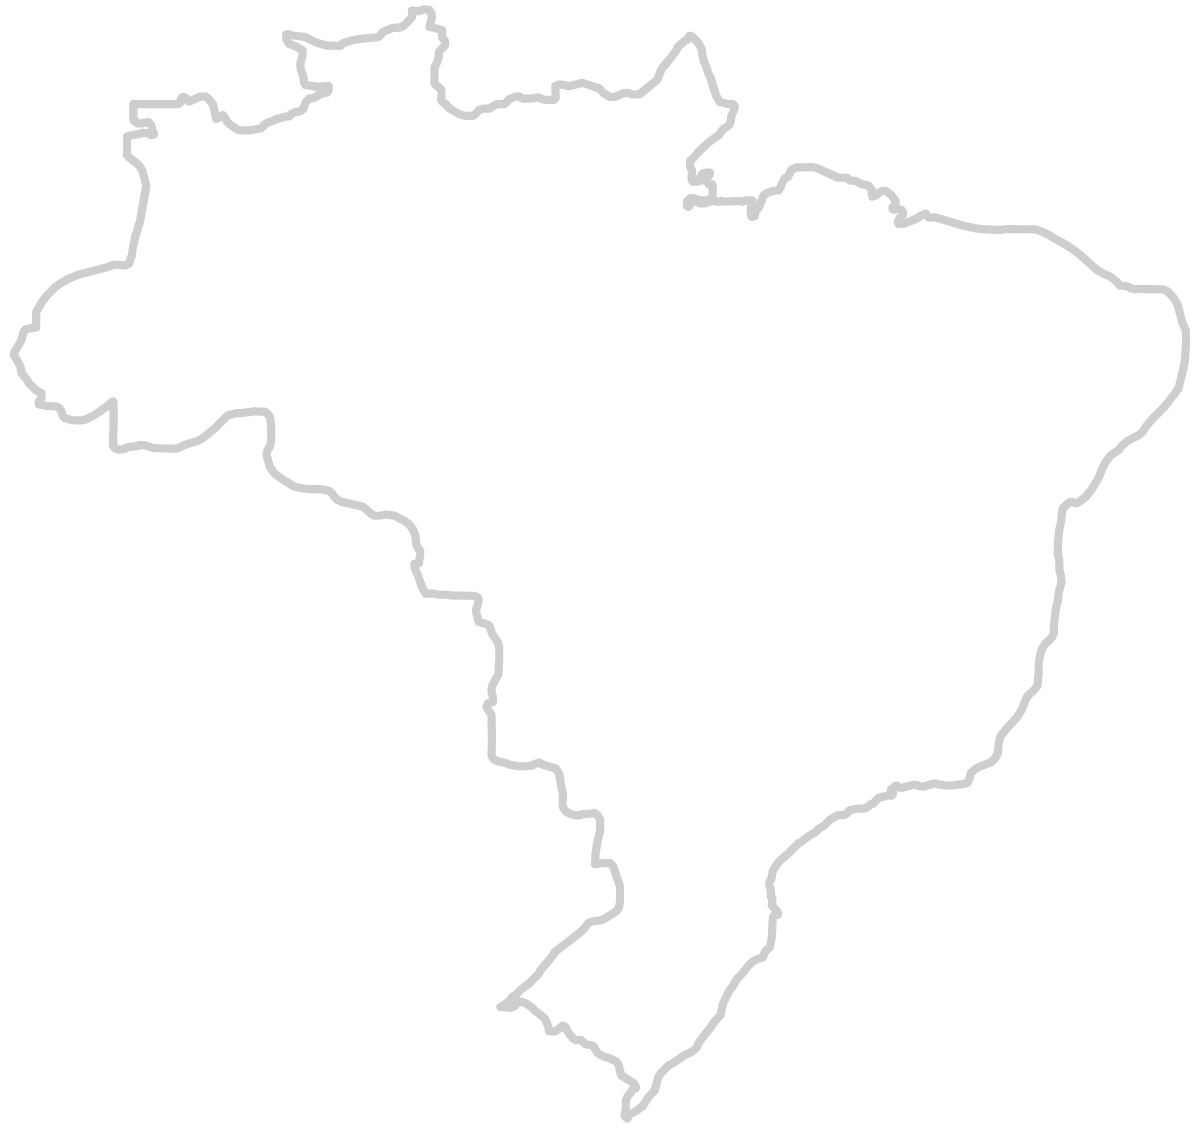 Foto: Mapa do brasil